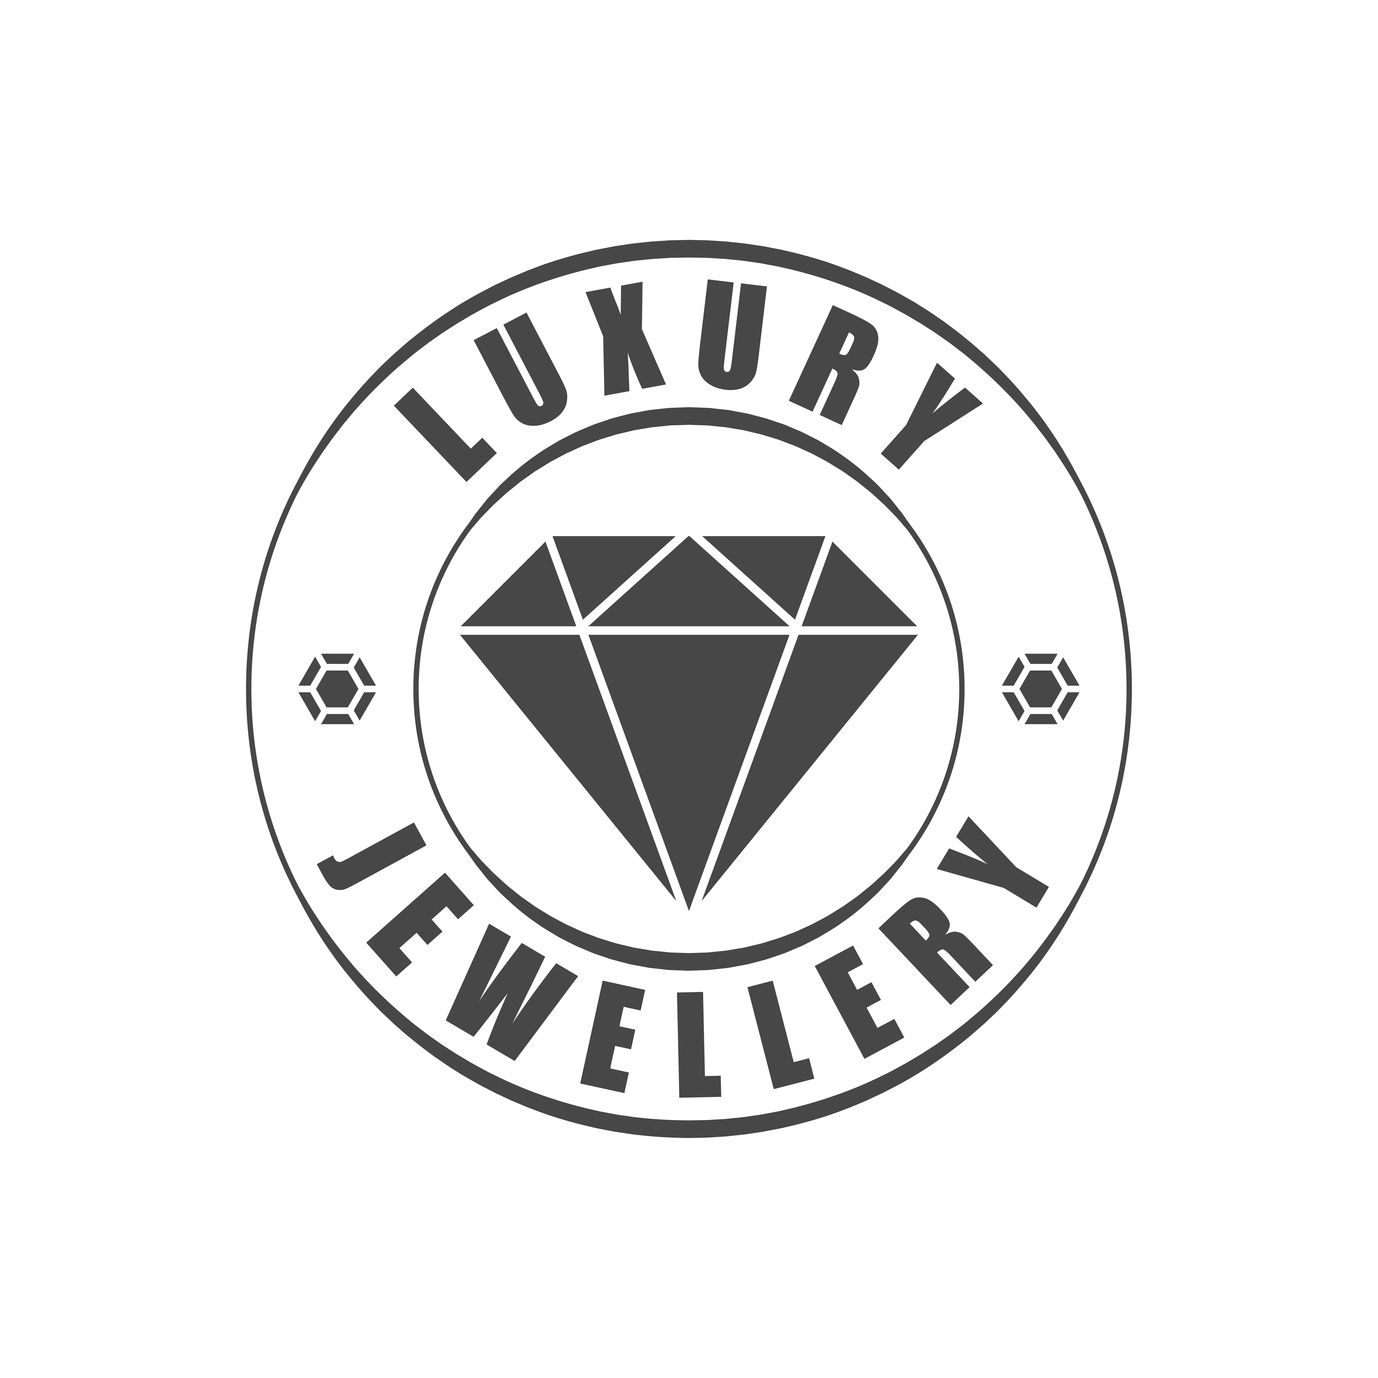 jewelry logo